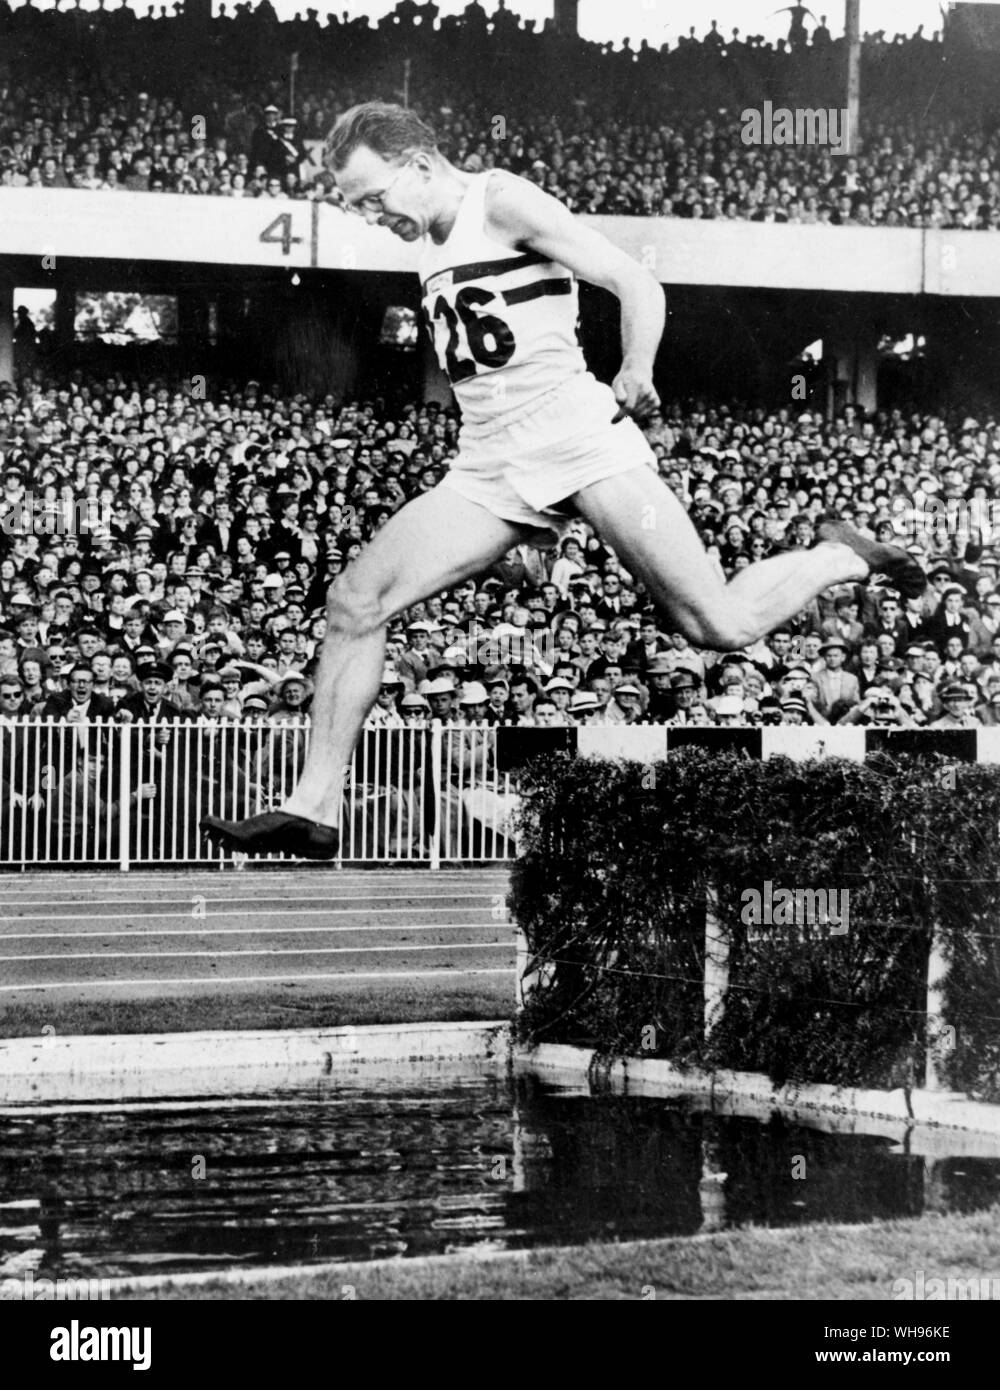 Aus., Melbourne, Olympics, 1956: Chris Brasher von Großbritannien am Wasser Sprung auf die letzte Runde der 3000m Hindernislauf.. Stockfoto